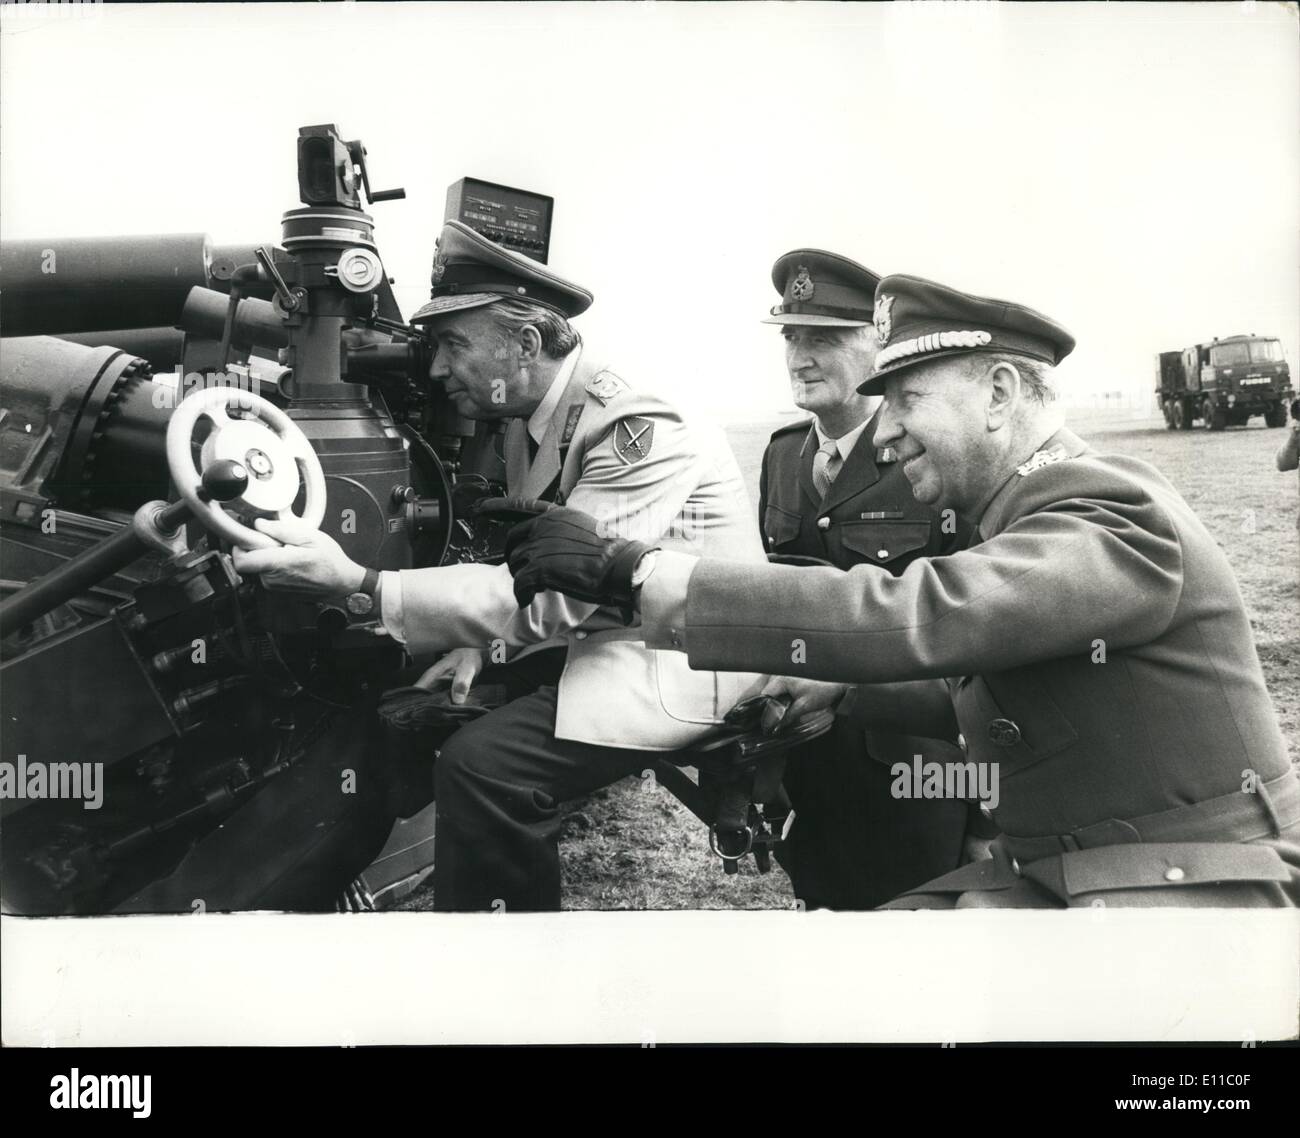 Septembre 09, 1976 - L'acceptation internationale de la FH70 155 mm Howitzer de champ à l'école royale d'artillerie - Darkhill : Il y a eu une démonstration aujourd'hui de la FH70 155mm Howitzer de champ à l'École royale d'artillerie à Darkhill, Salisbury. Le FH70 projet a commencé comme un accord bilatéral entre le Royaume-Uni et l'Allemagne en 1966. Un protocole d'accord a été signé en 1968 et le développement a commencé cette année. En 1969 l'Italie a rejoint le projet et même si ce n'est pas responsable de tous les coûts de développement et de partage de la production Banque D'Images